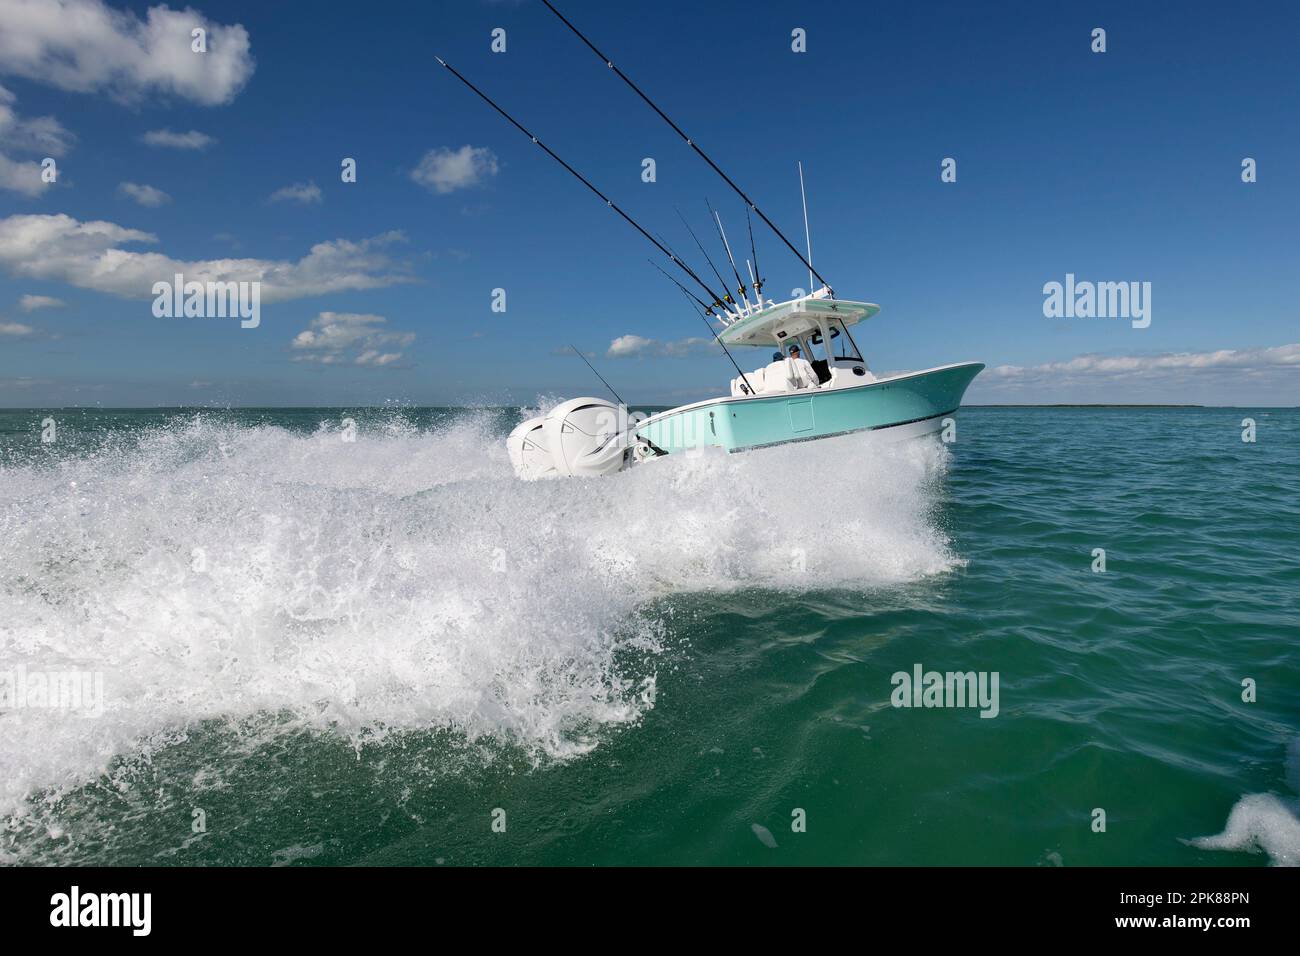 Ein Fischerboot in der Mittelkonsole, das schnell davonrast. Stockfoto